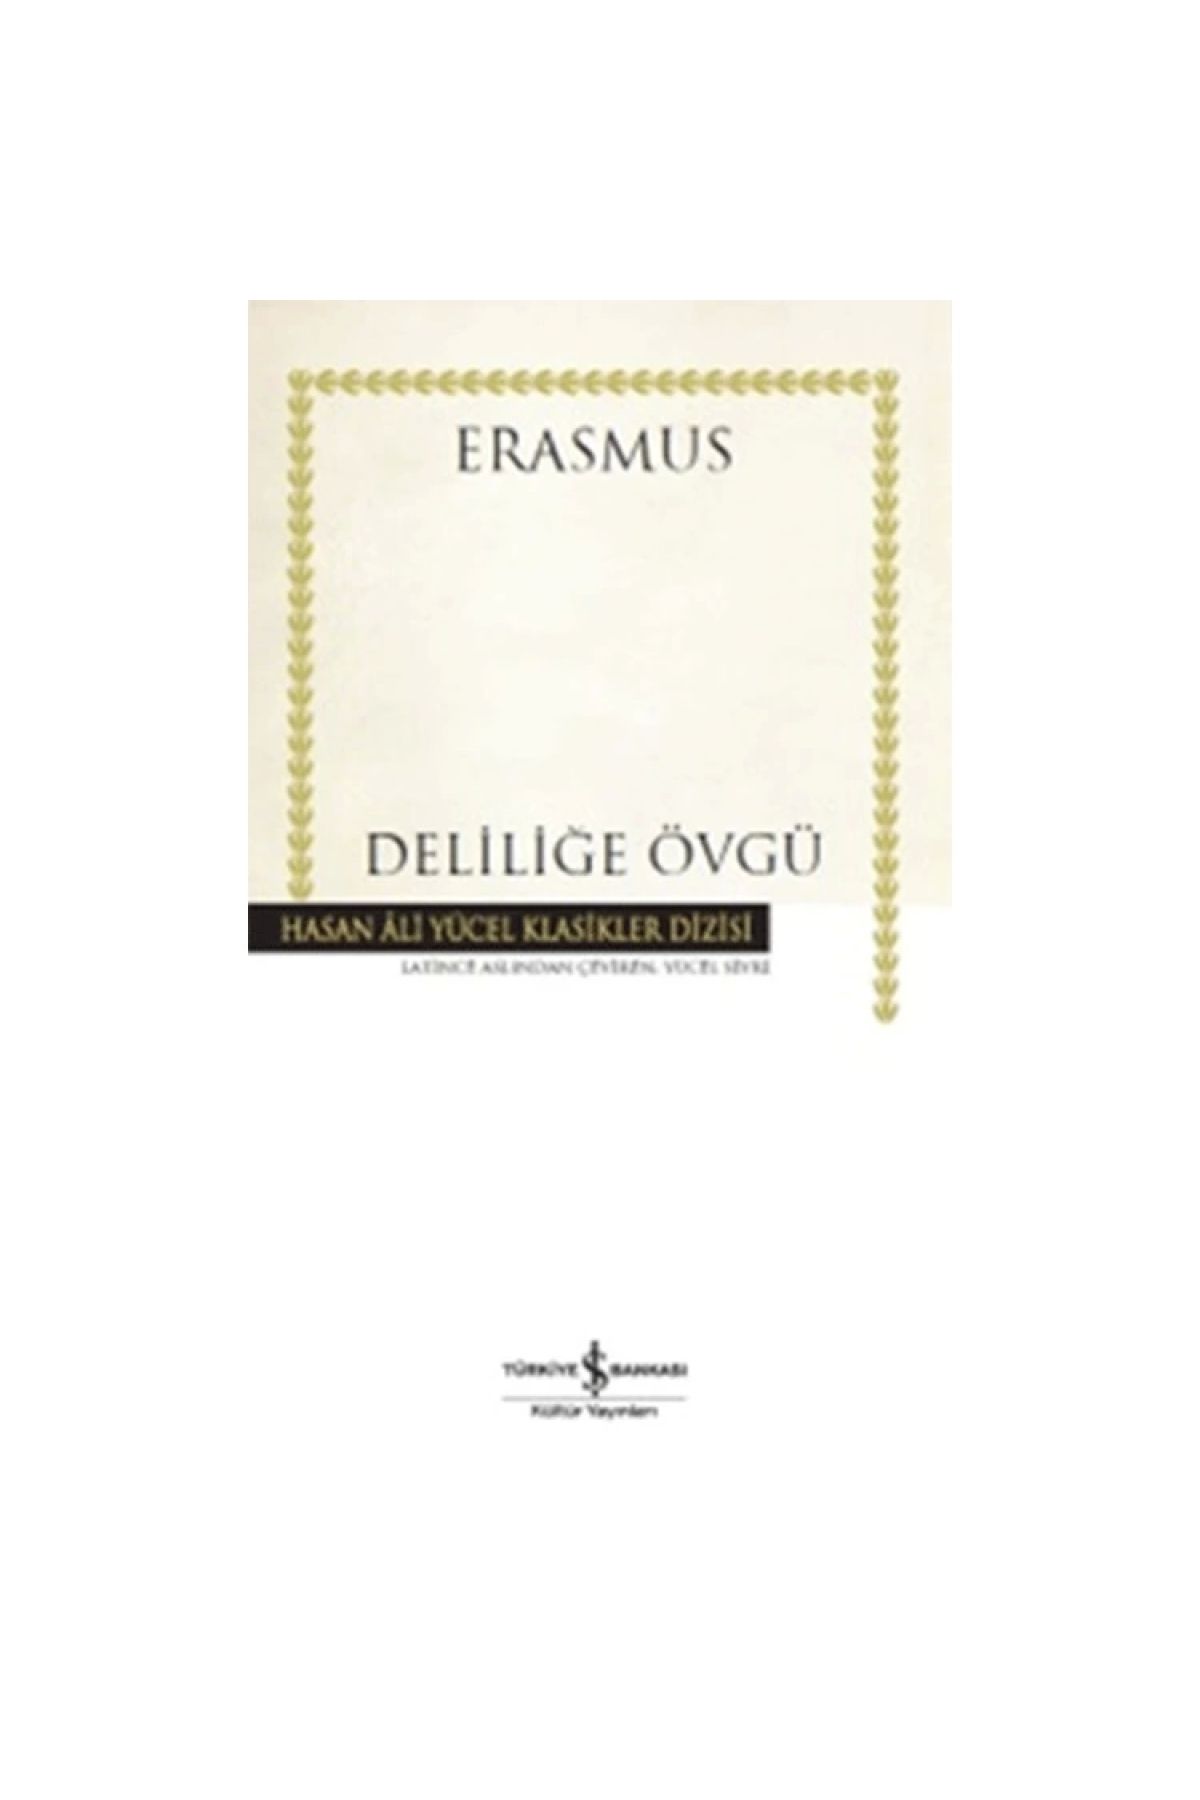 İş Bankası Kültür Yayınları Deliliğe Övgü- Desiderius Erasmus